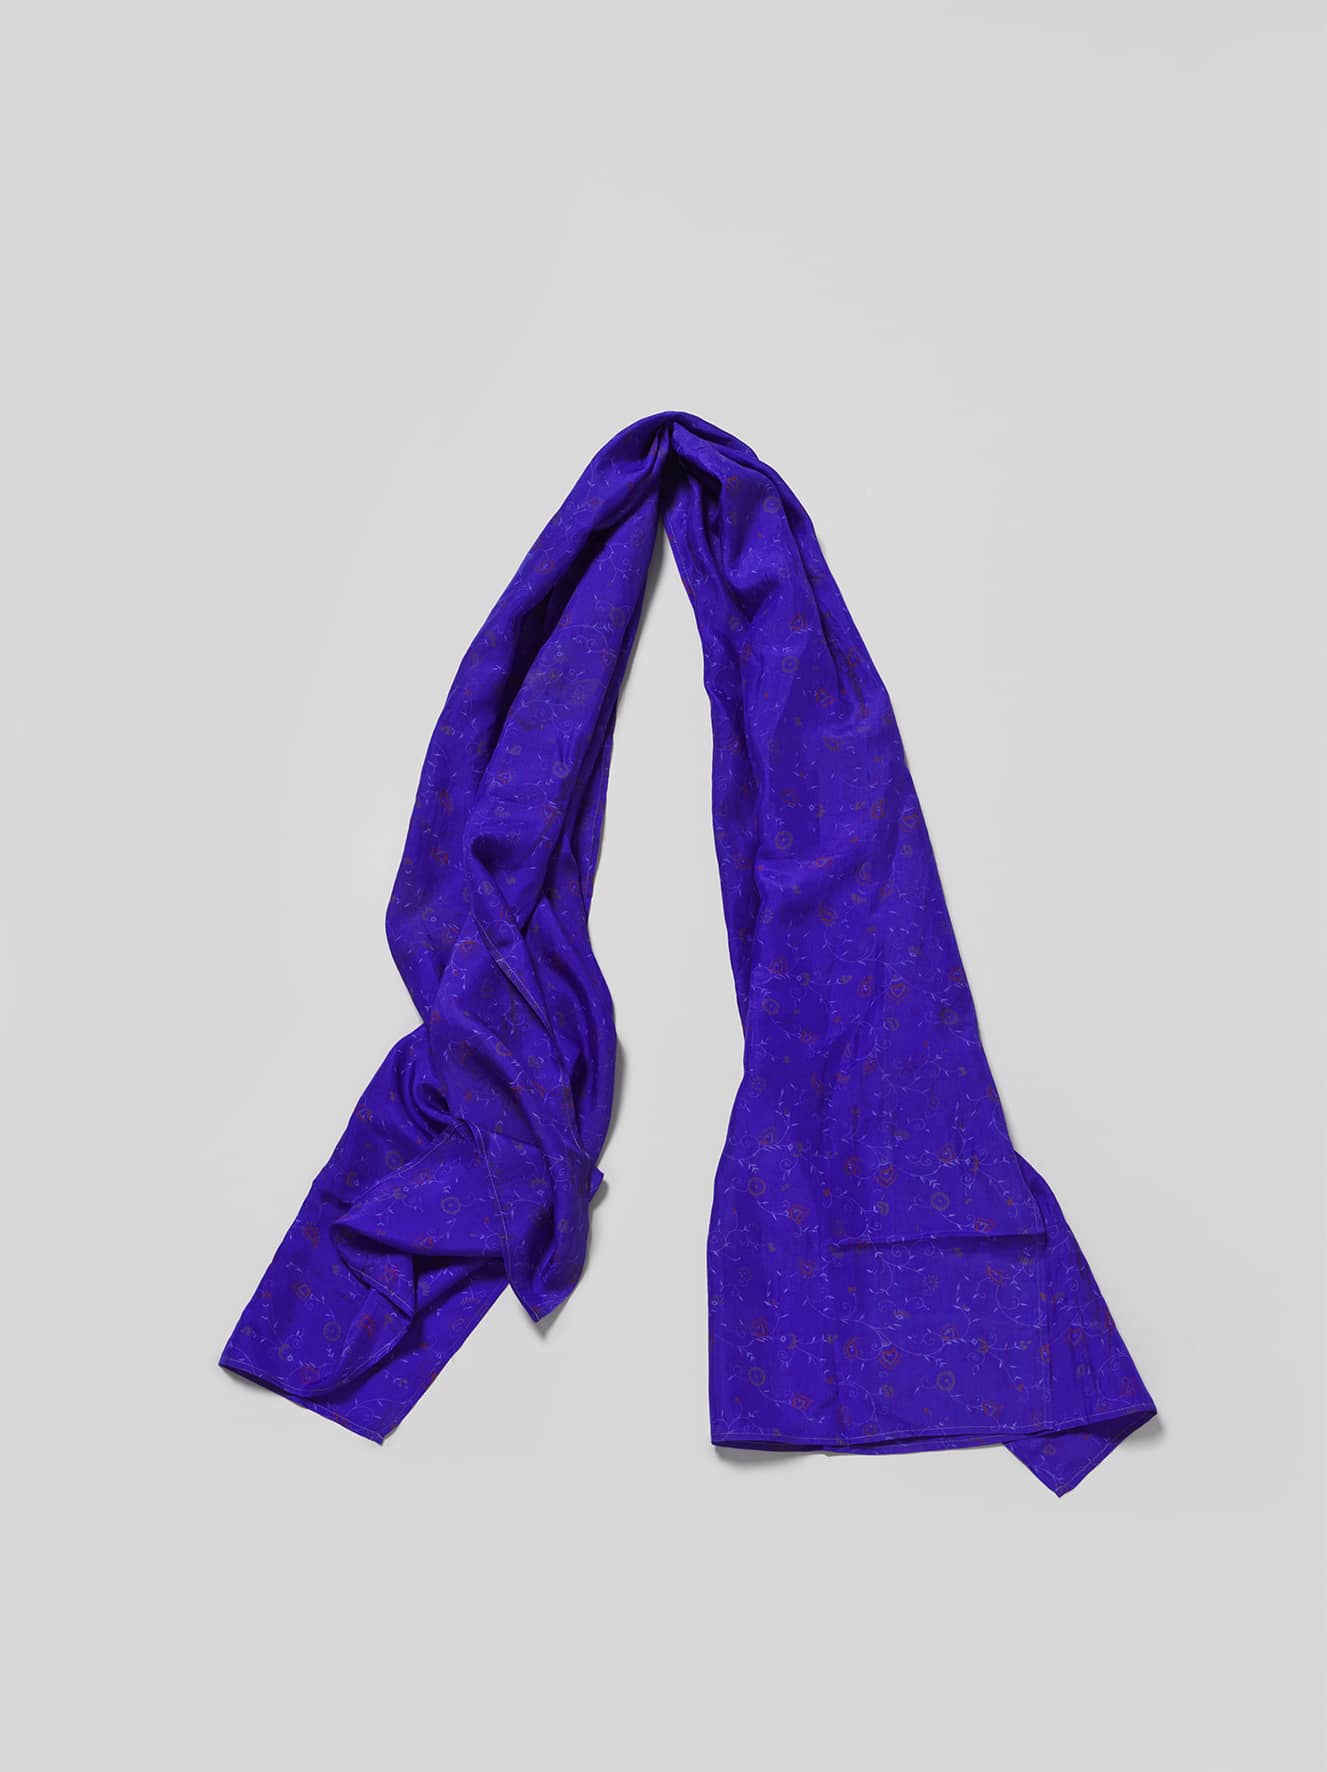 Sari Shawl - Blue/Purple tones